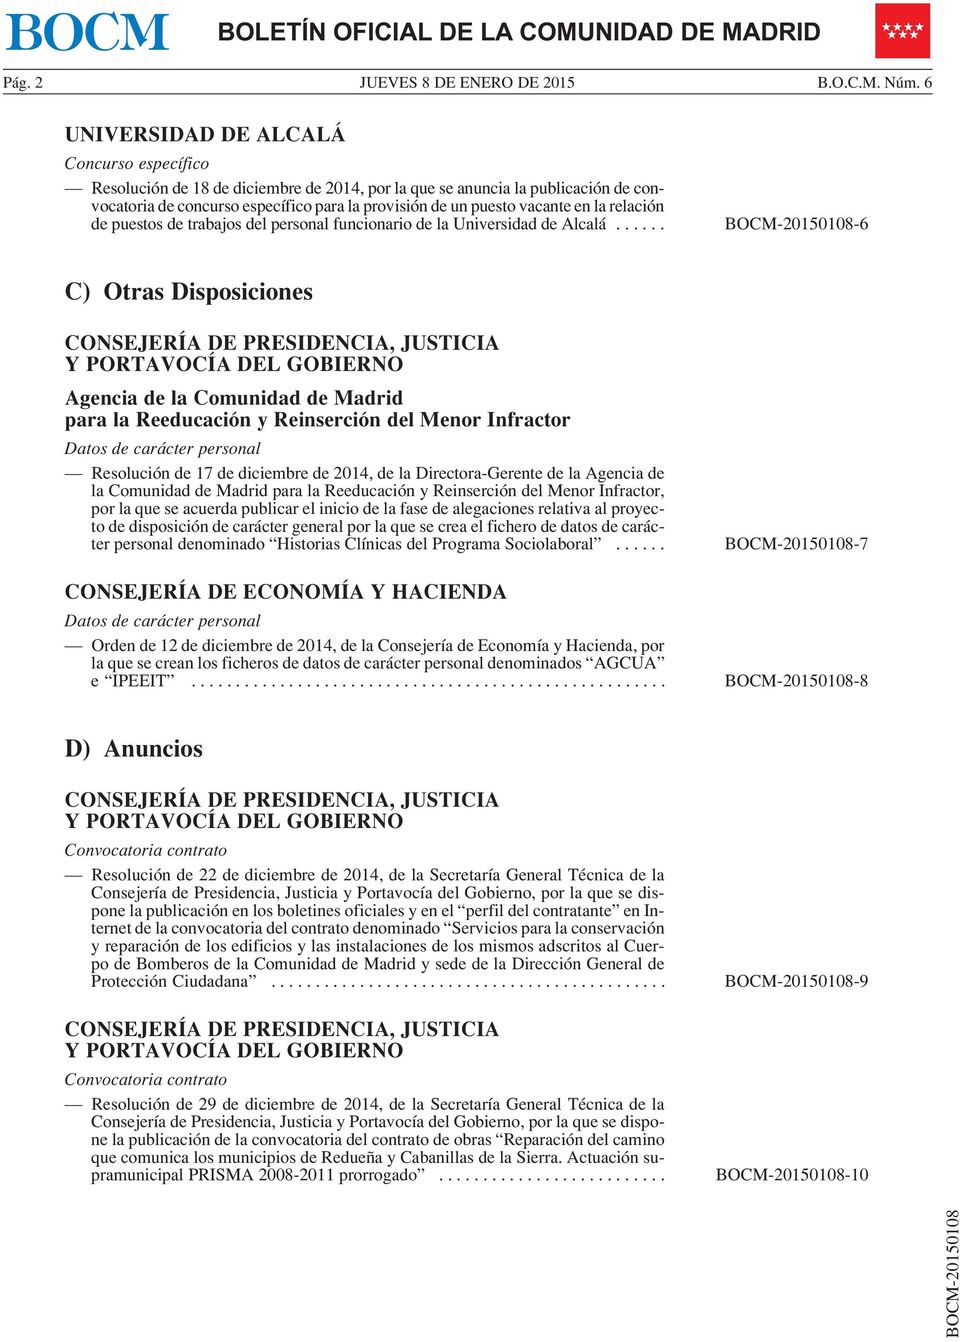 en la relación de puestos de trabajos del personal funcionario de la Universidad de Alcalá.